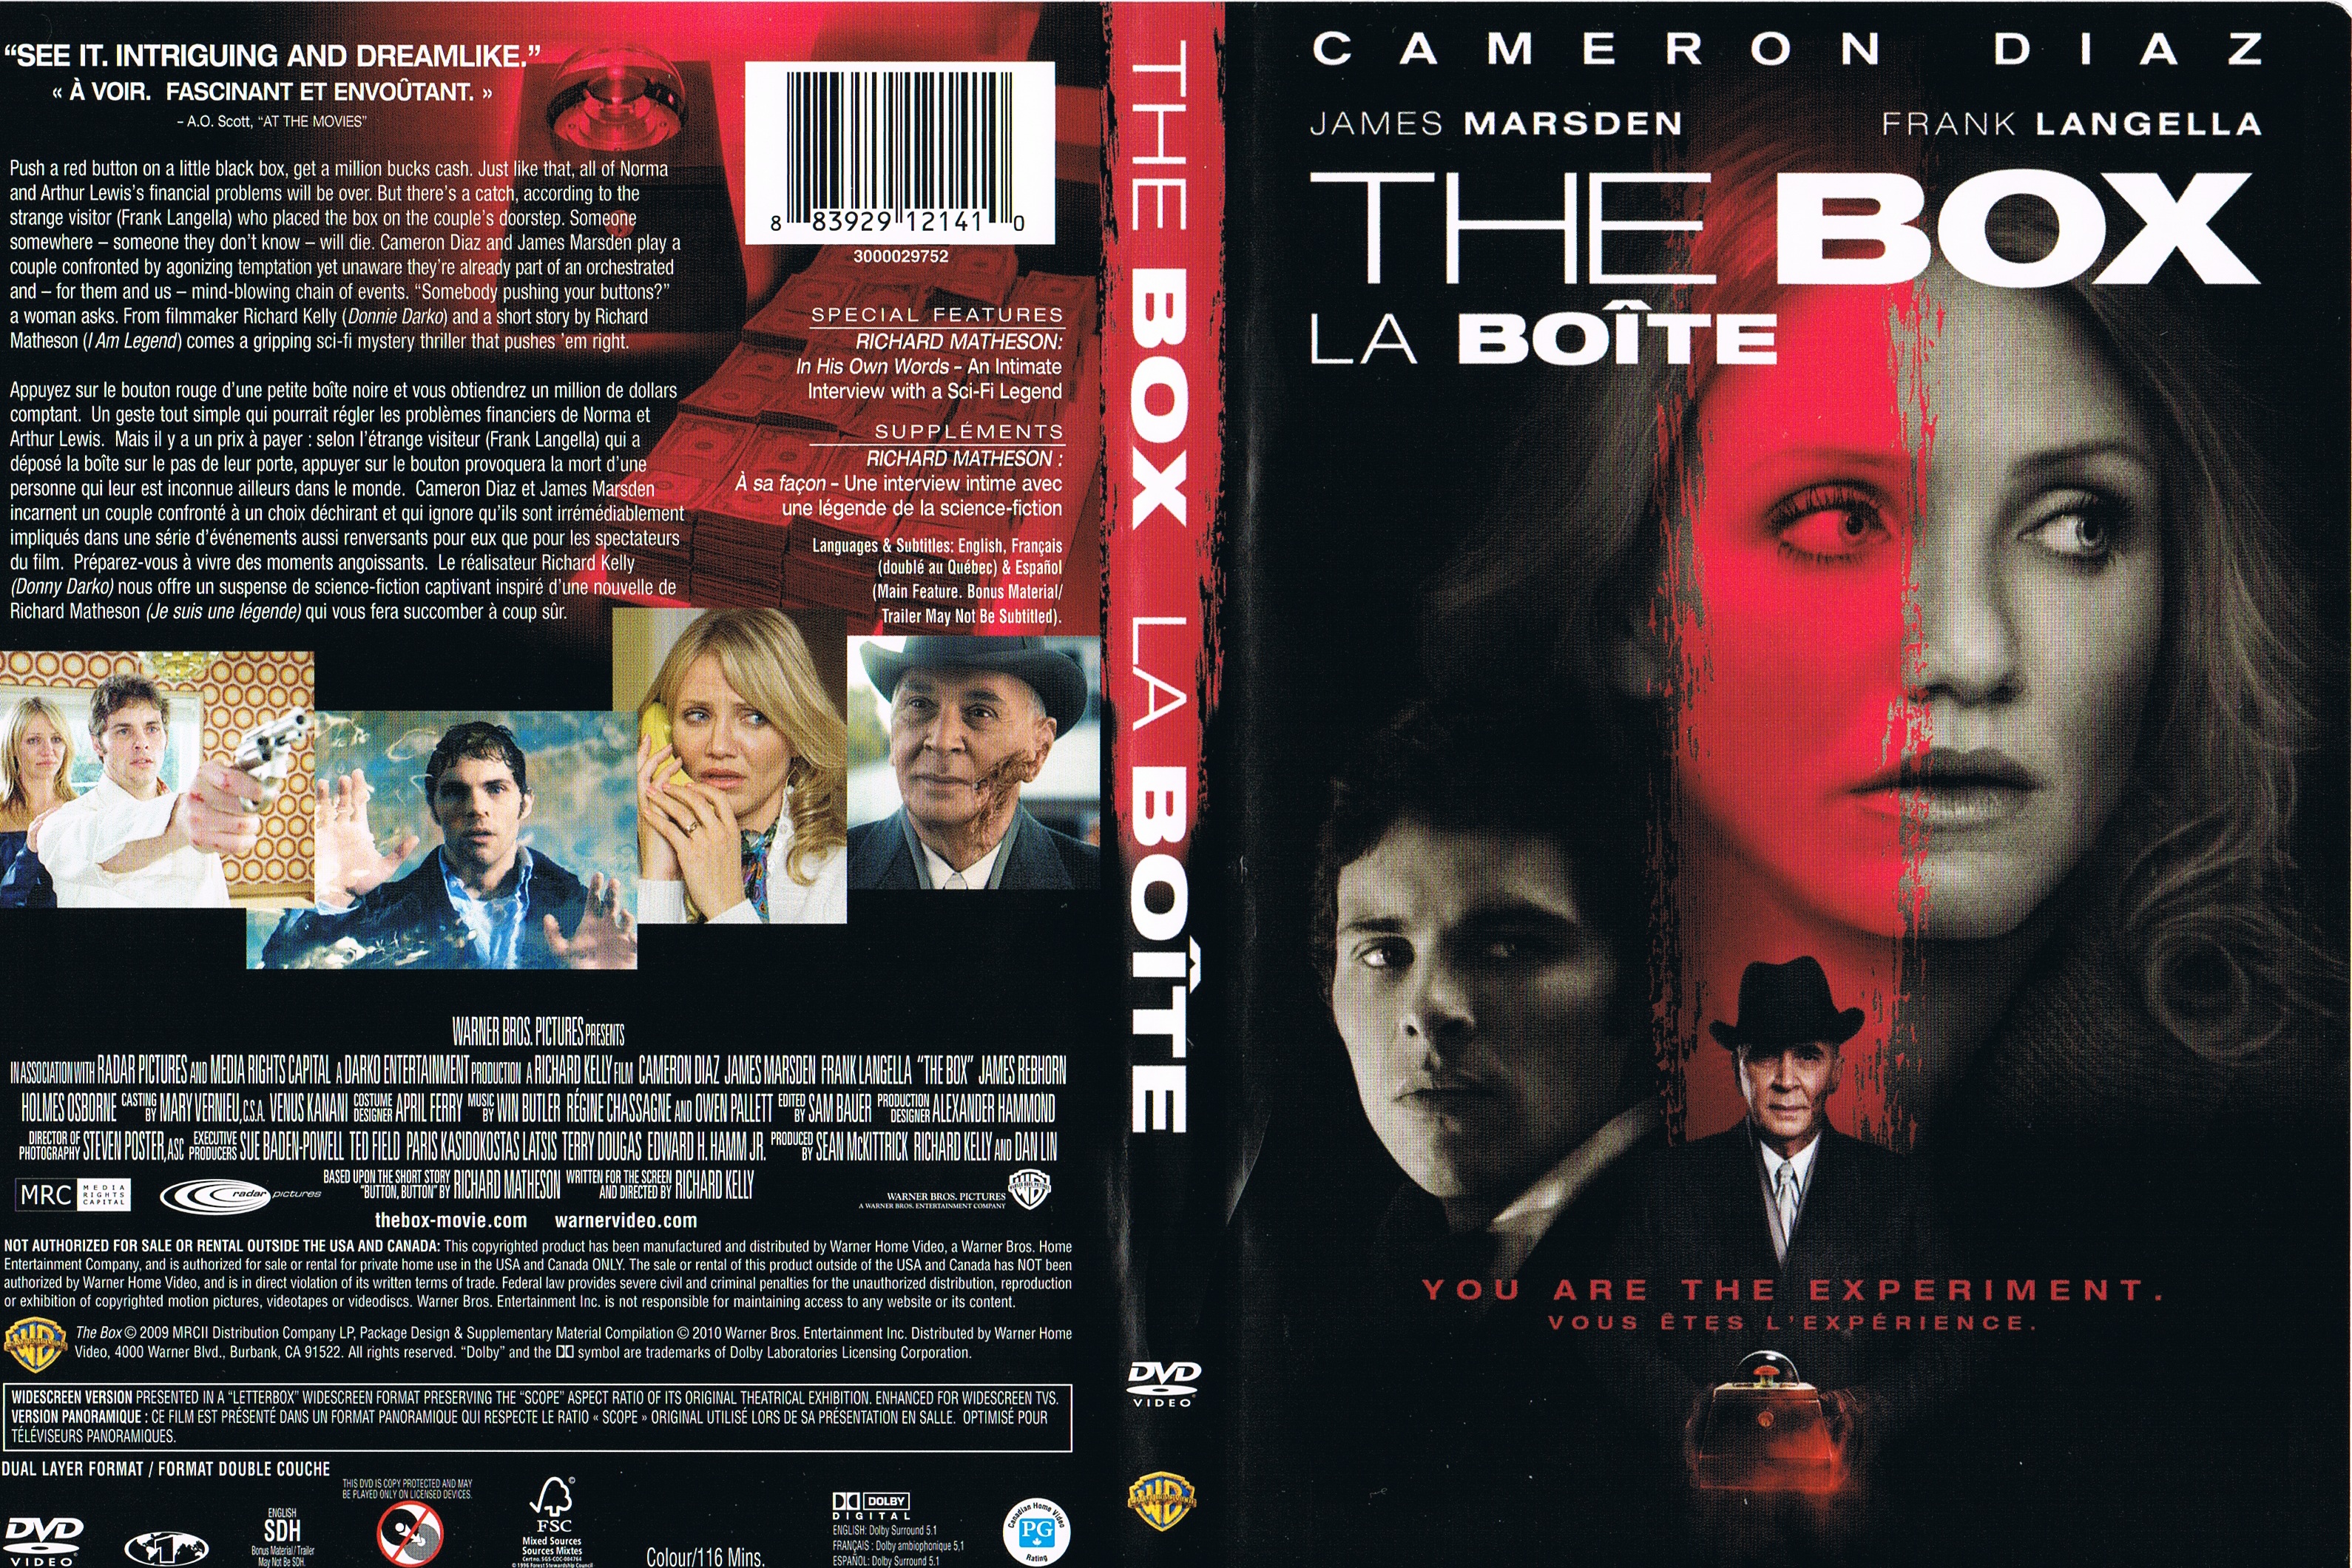 Jaquette DVD The box - La boite (Canadienne)